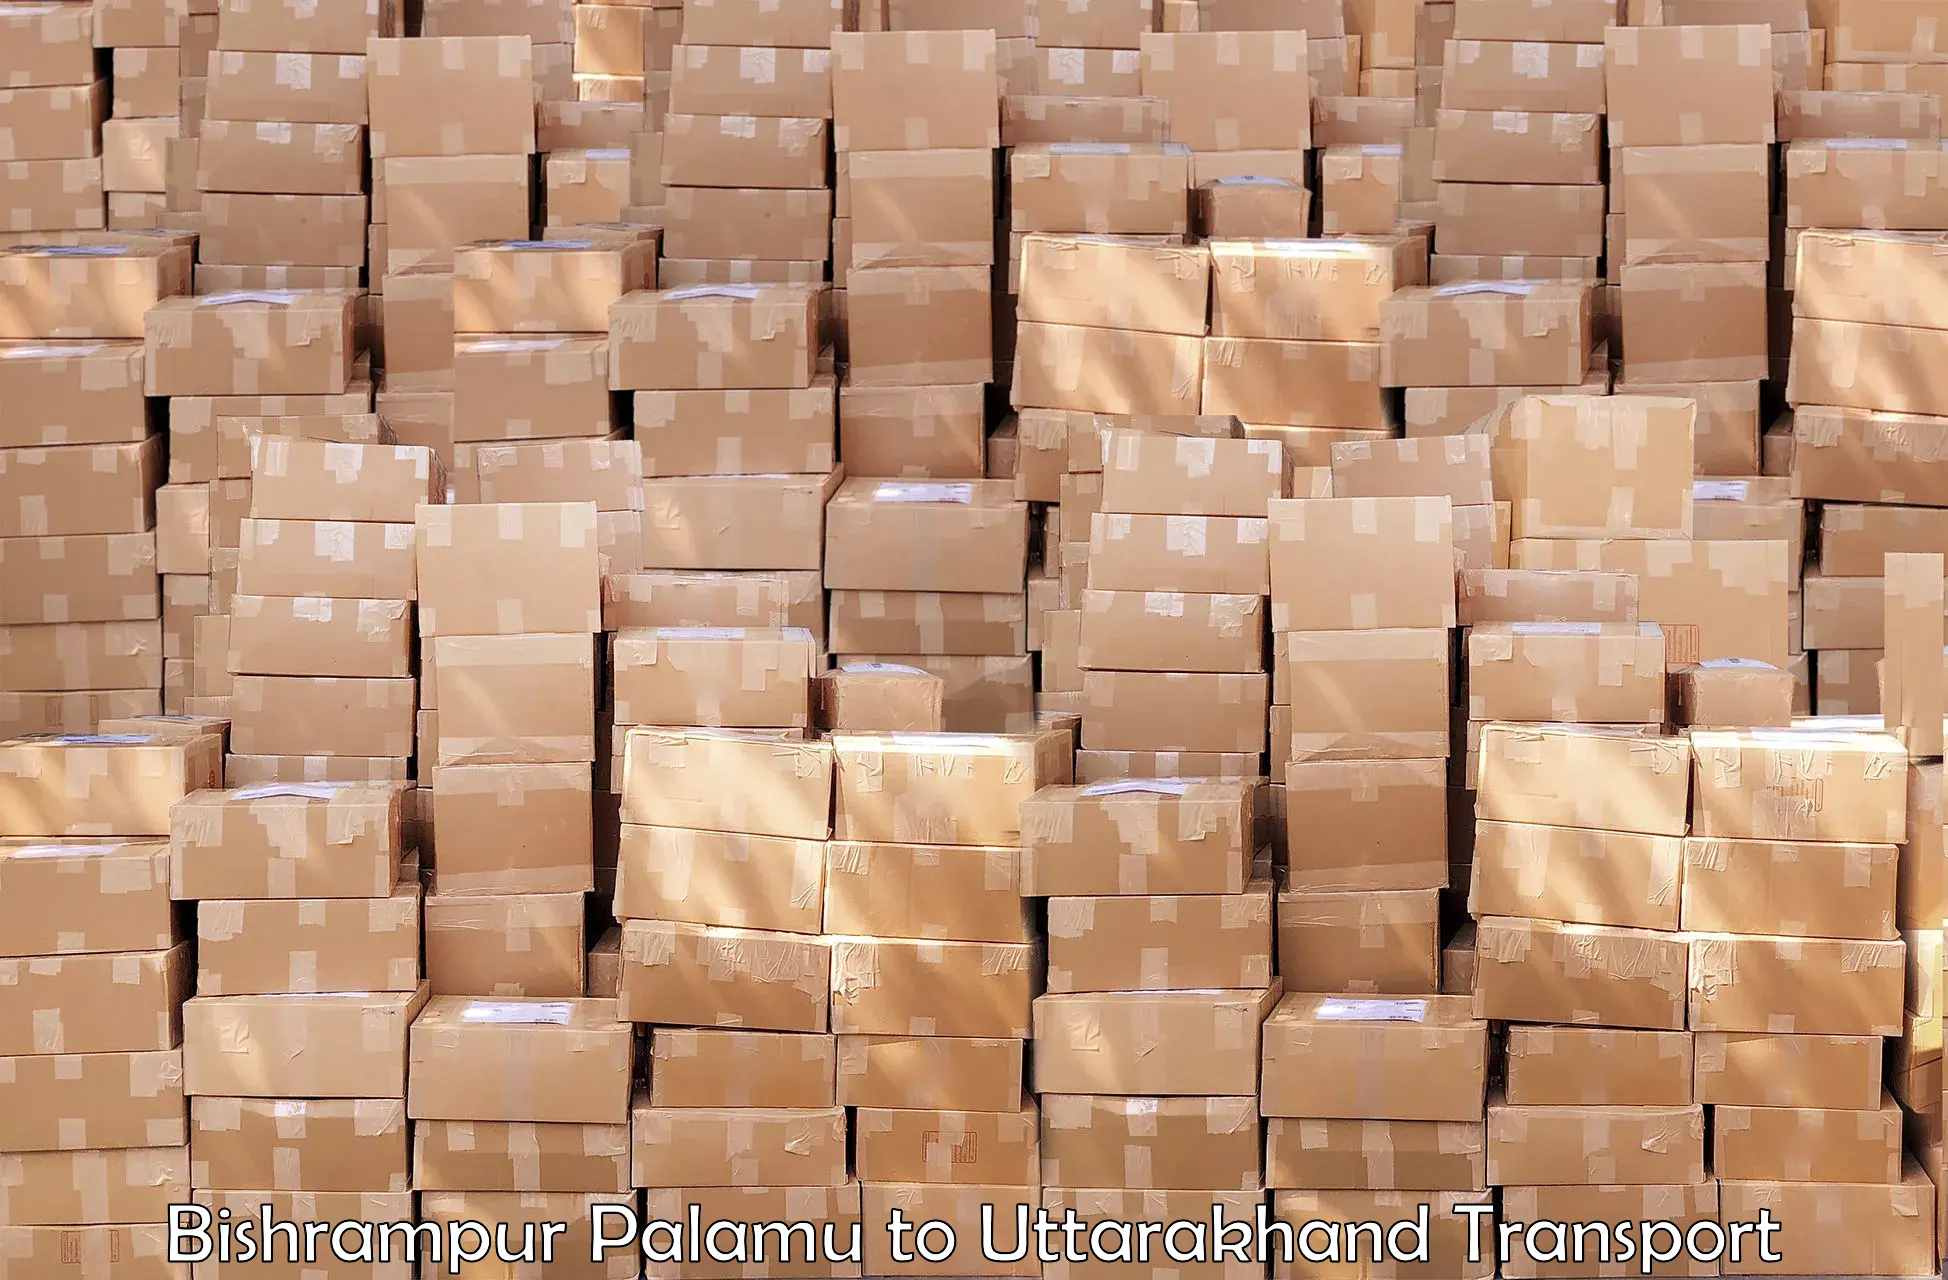 Package delivery services in Bishrampur Palamu to Udham Singh Nagar